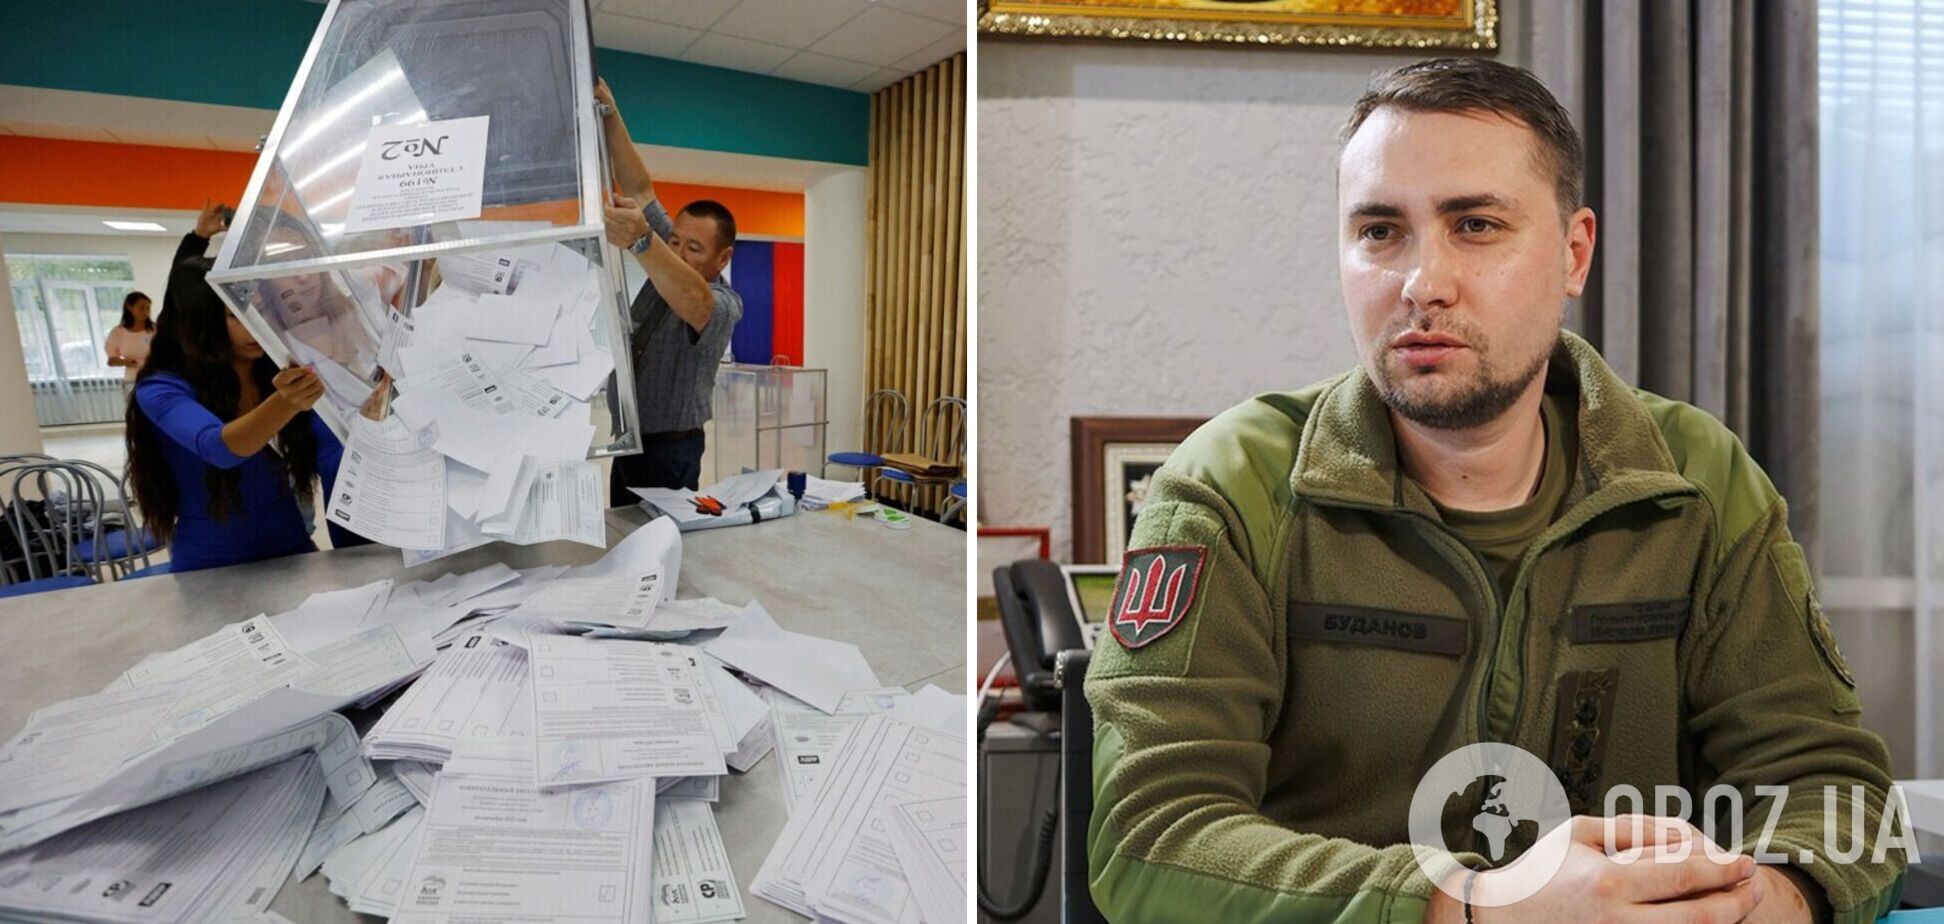 Голосовать планировали менее трети жителей: Буданов прокомментировал 'выборы' Путина на оккупированных территориях